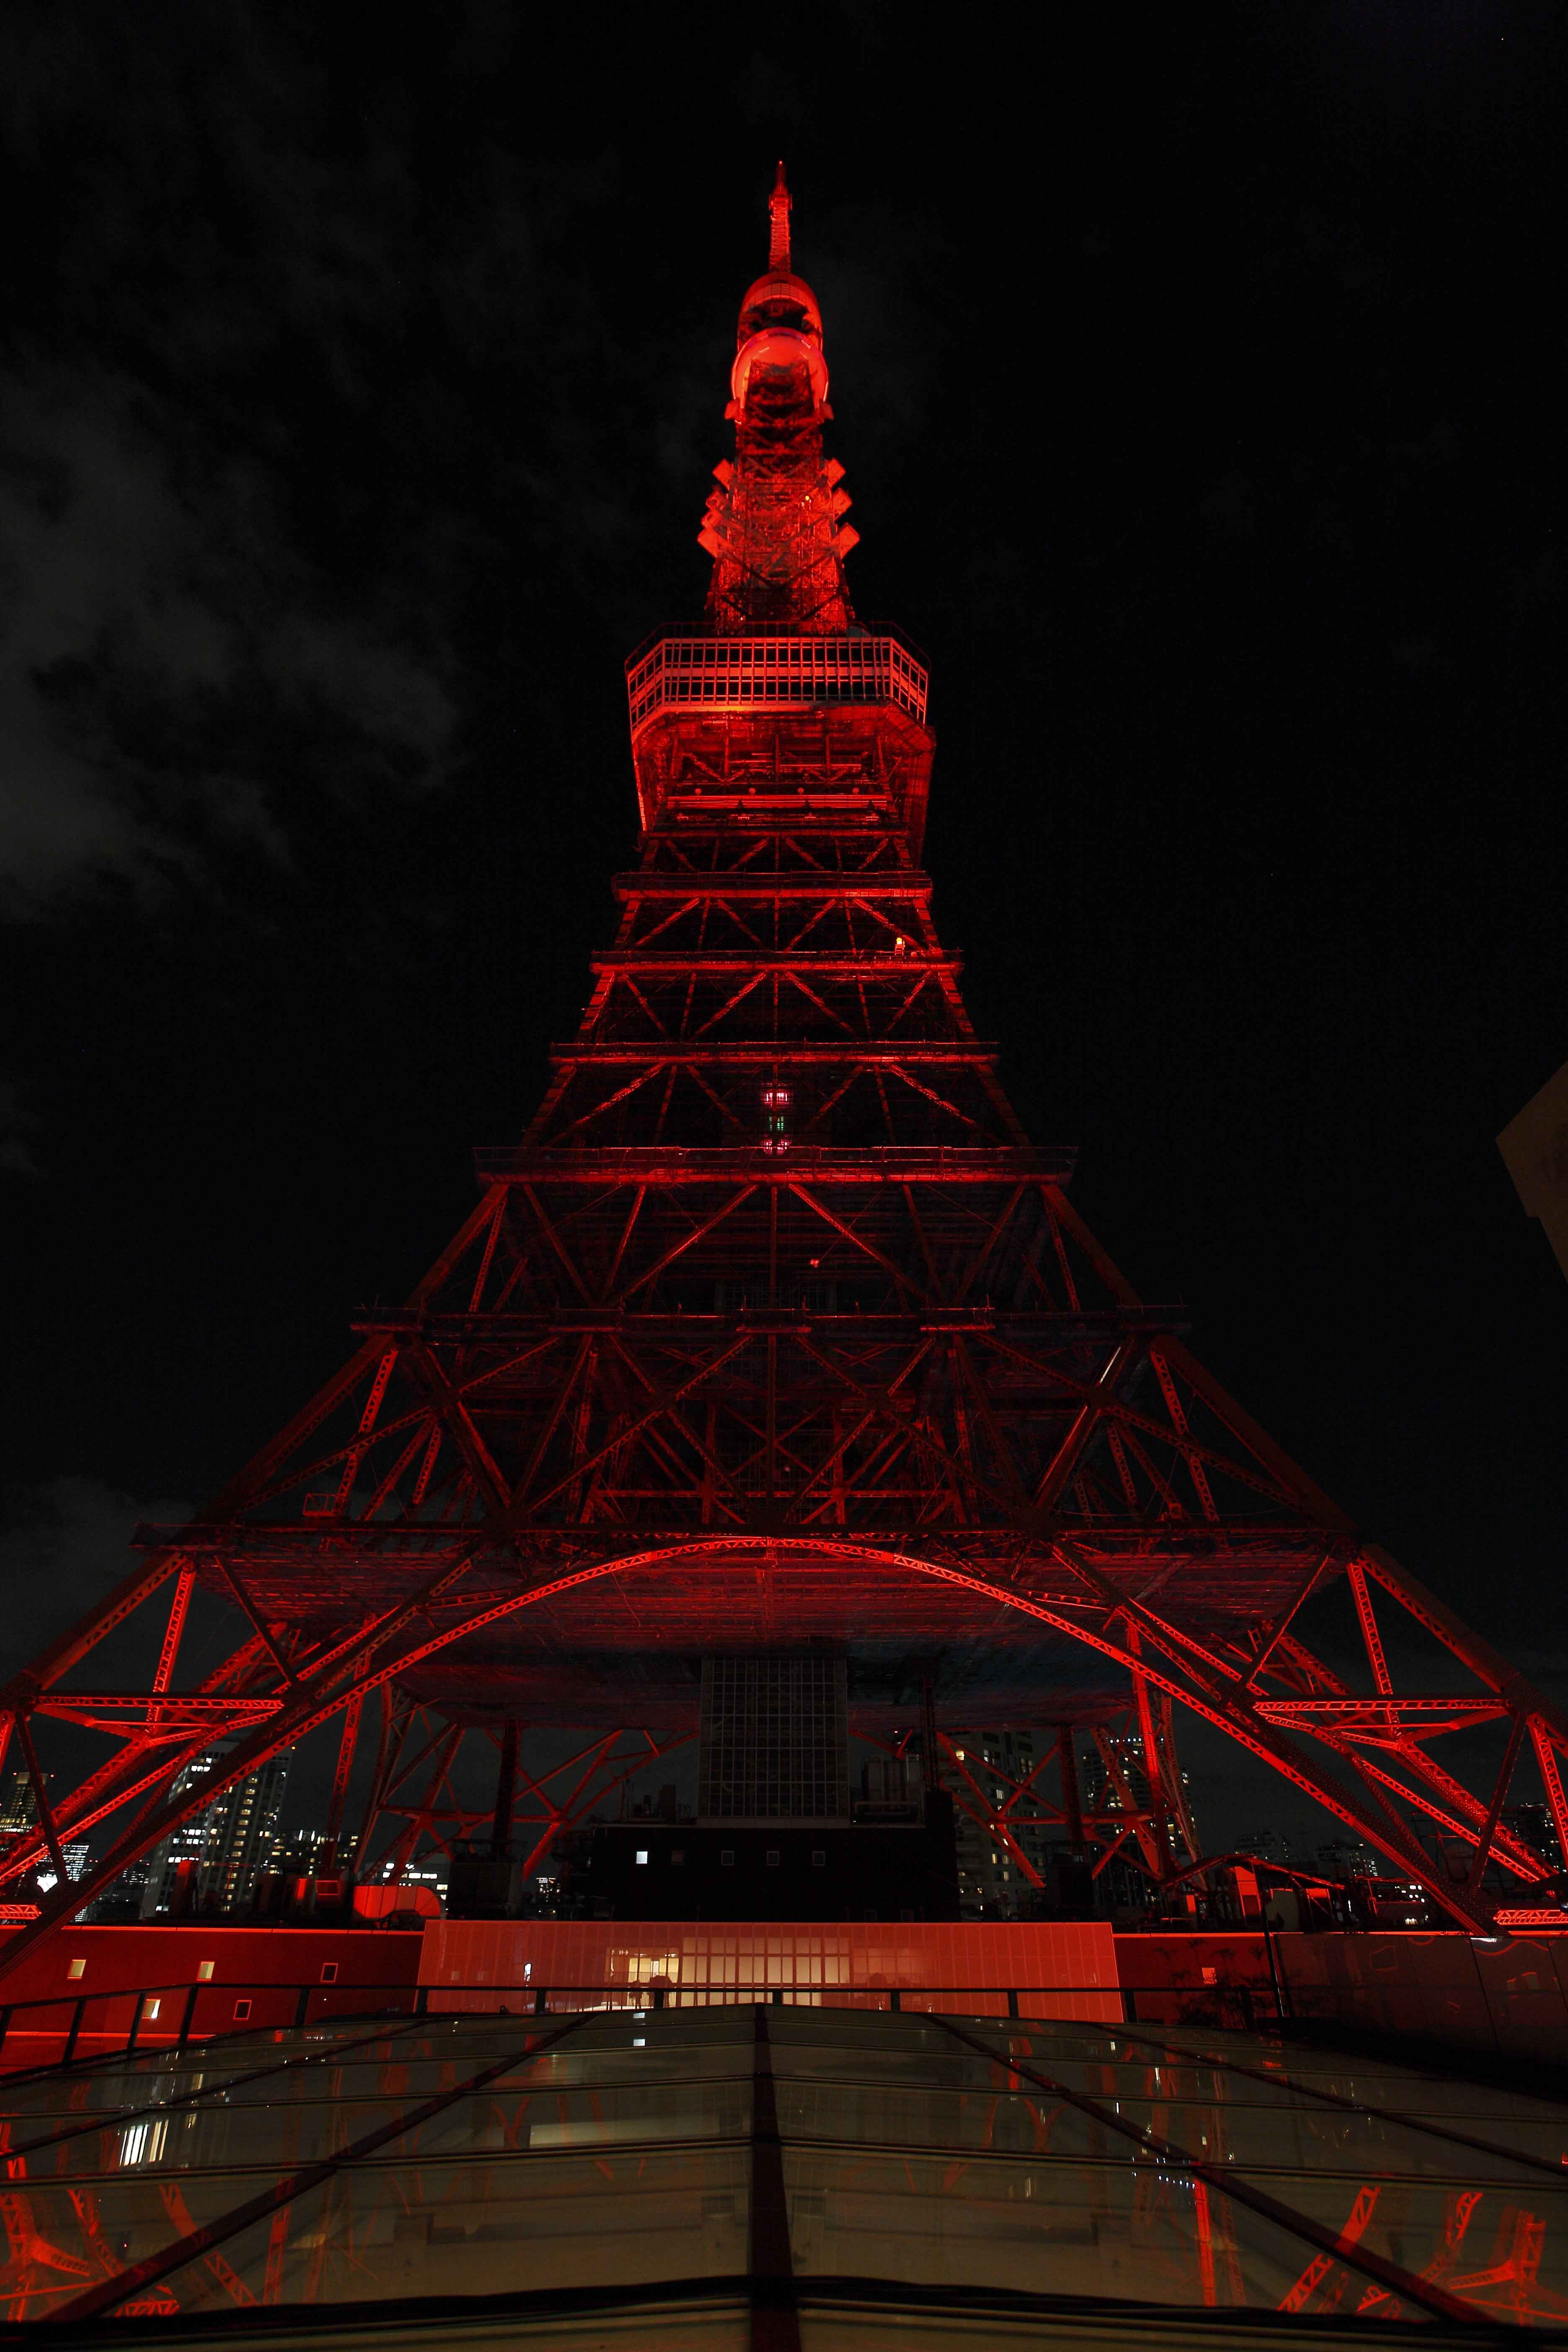 イベントレポート 日中友好を象徴し 2月4日に東京タワーを赤くライトアップ 中国旧暦新年 東京タワー レッドライトアップ 実行委員会のプレスリリース